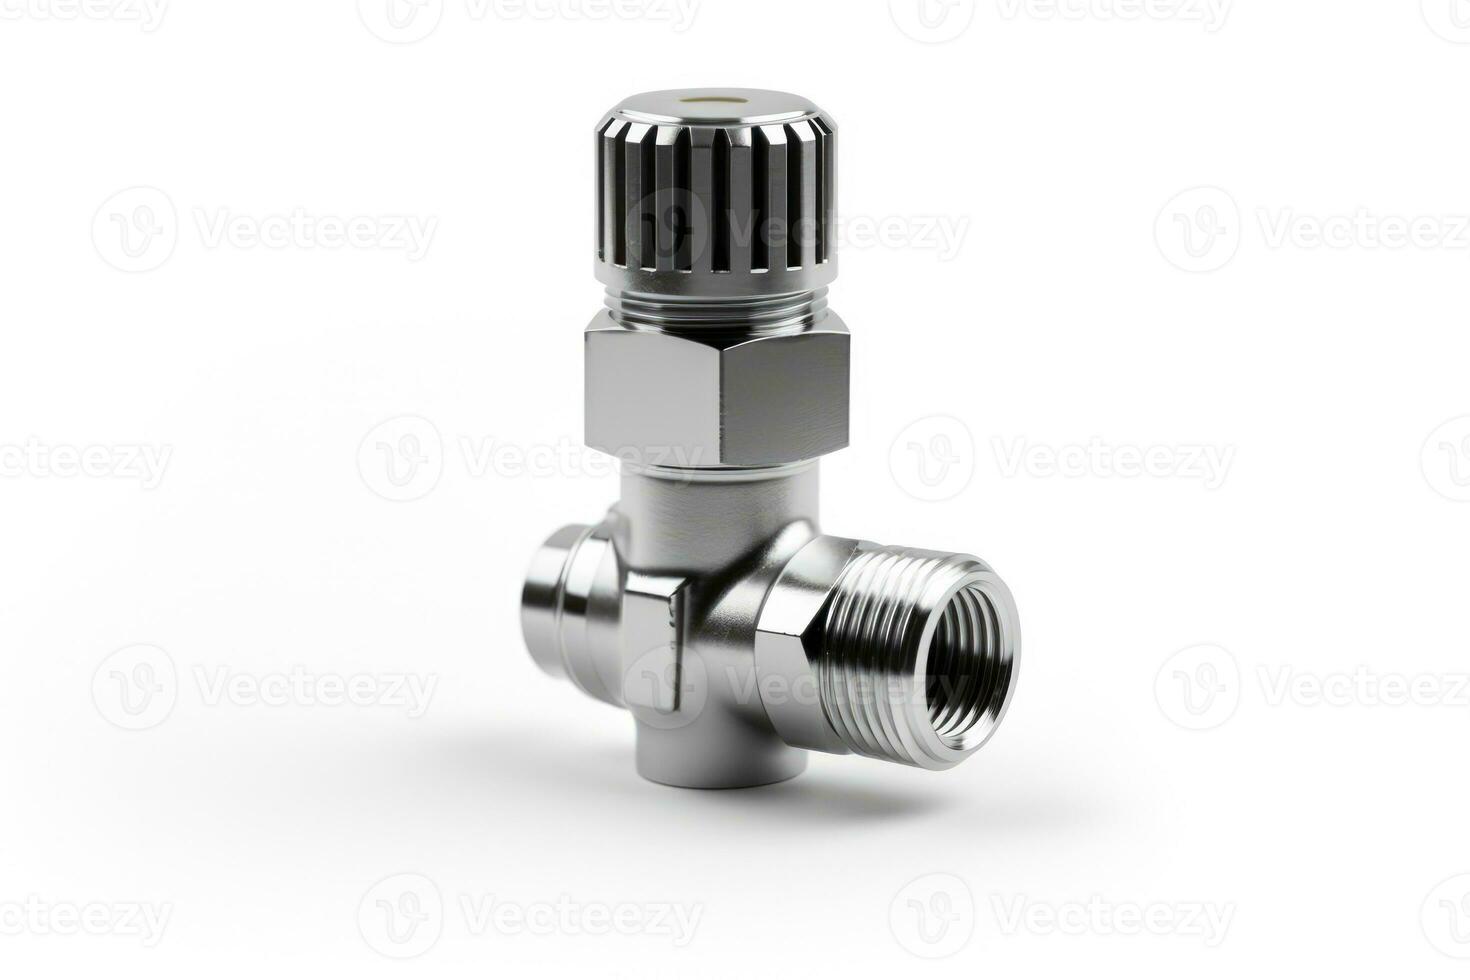 Radiator valve isolated on a white background photo